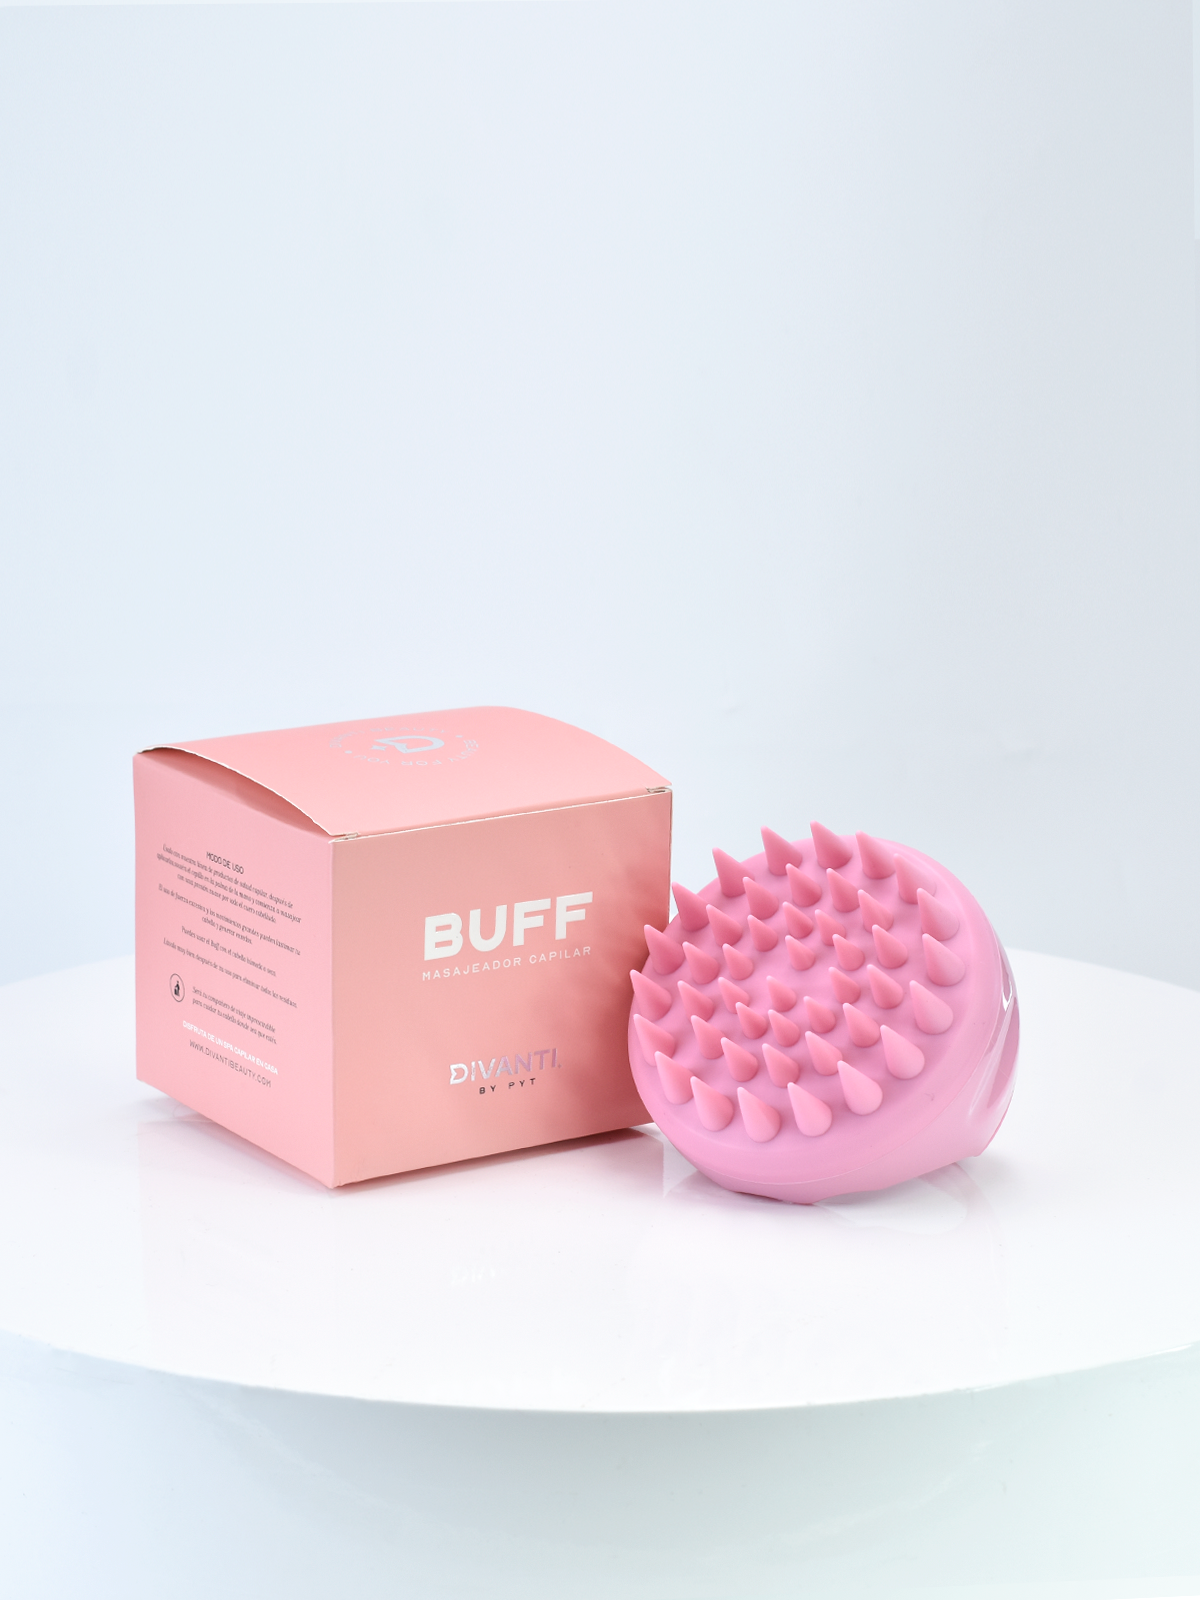 Buff masajeador rosa, de la marca Pyt